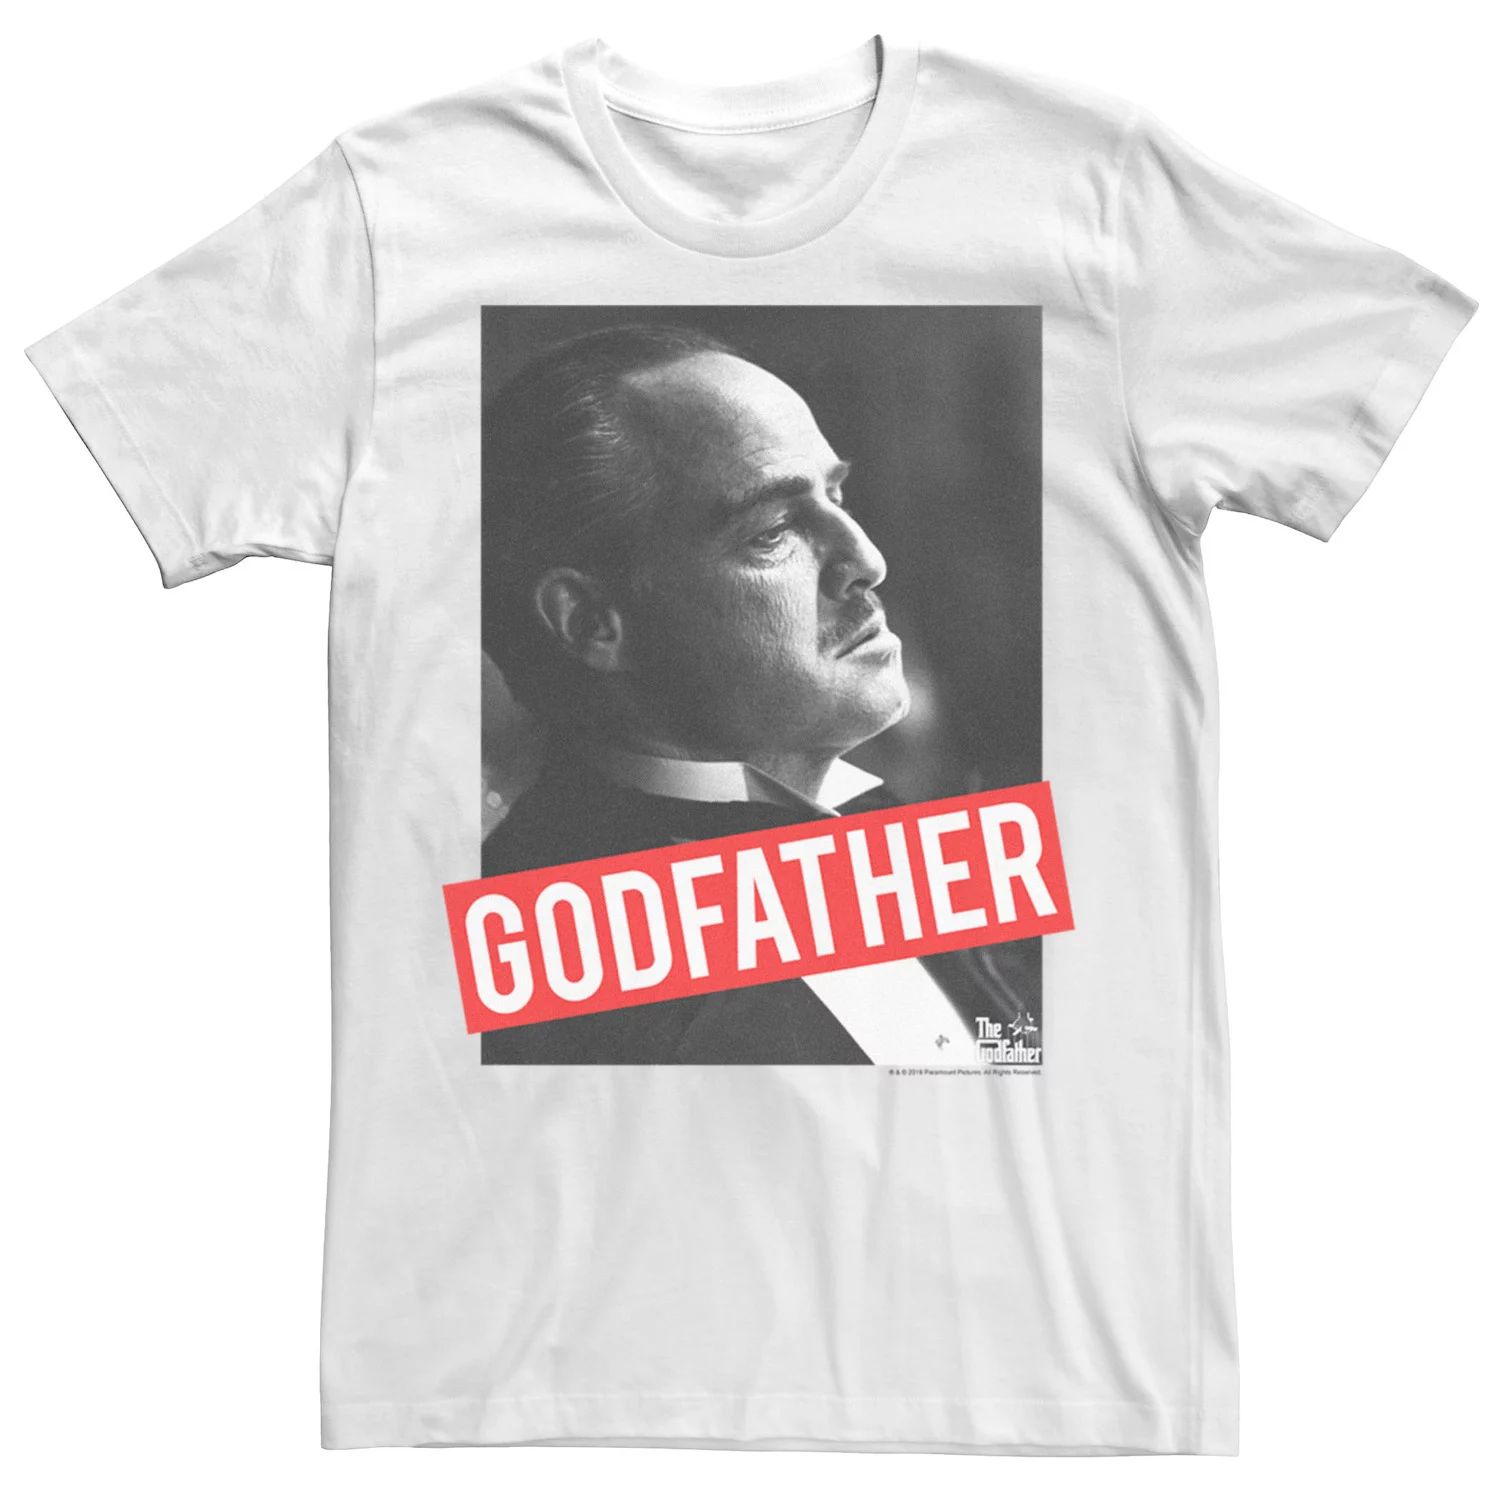 Мужская футболка с портретом «Крестный отец Дон» Licensed Character футболка dreamshirts крестный отец мужская черная 3xl